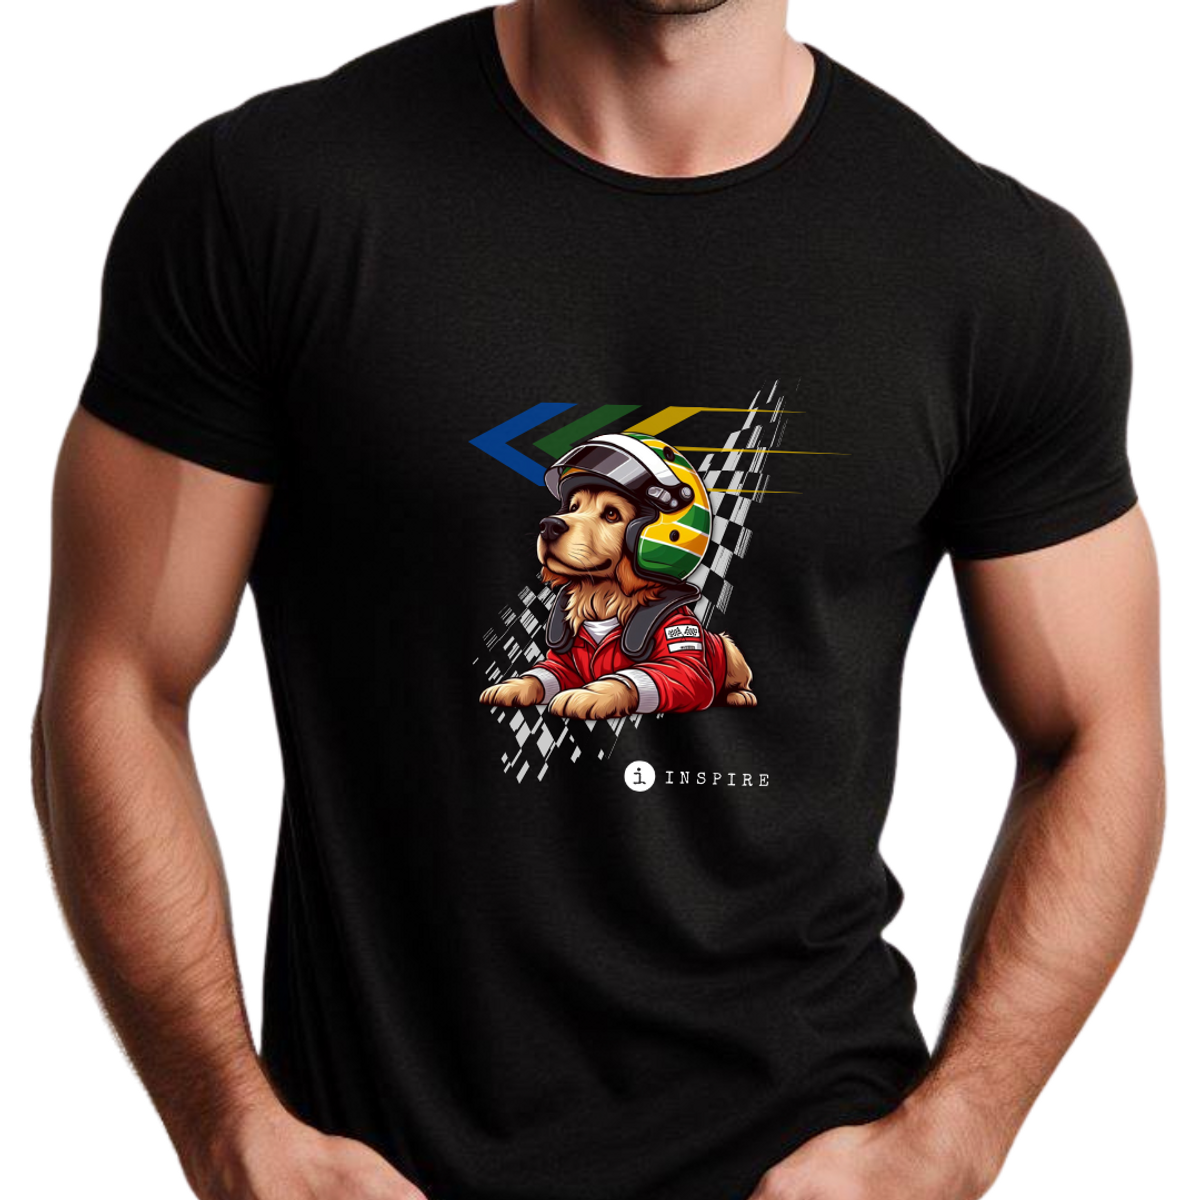 Nome do produto: Camiseta Inspire Senna - Classic (k)